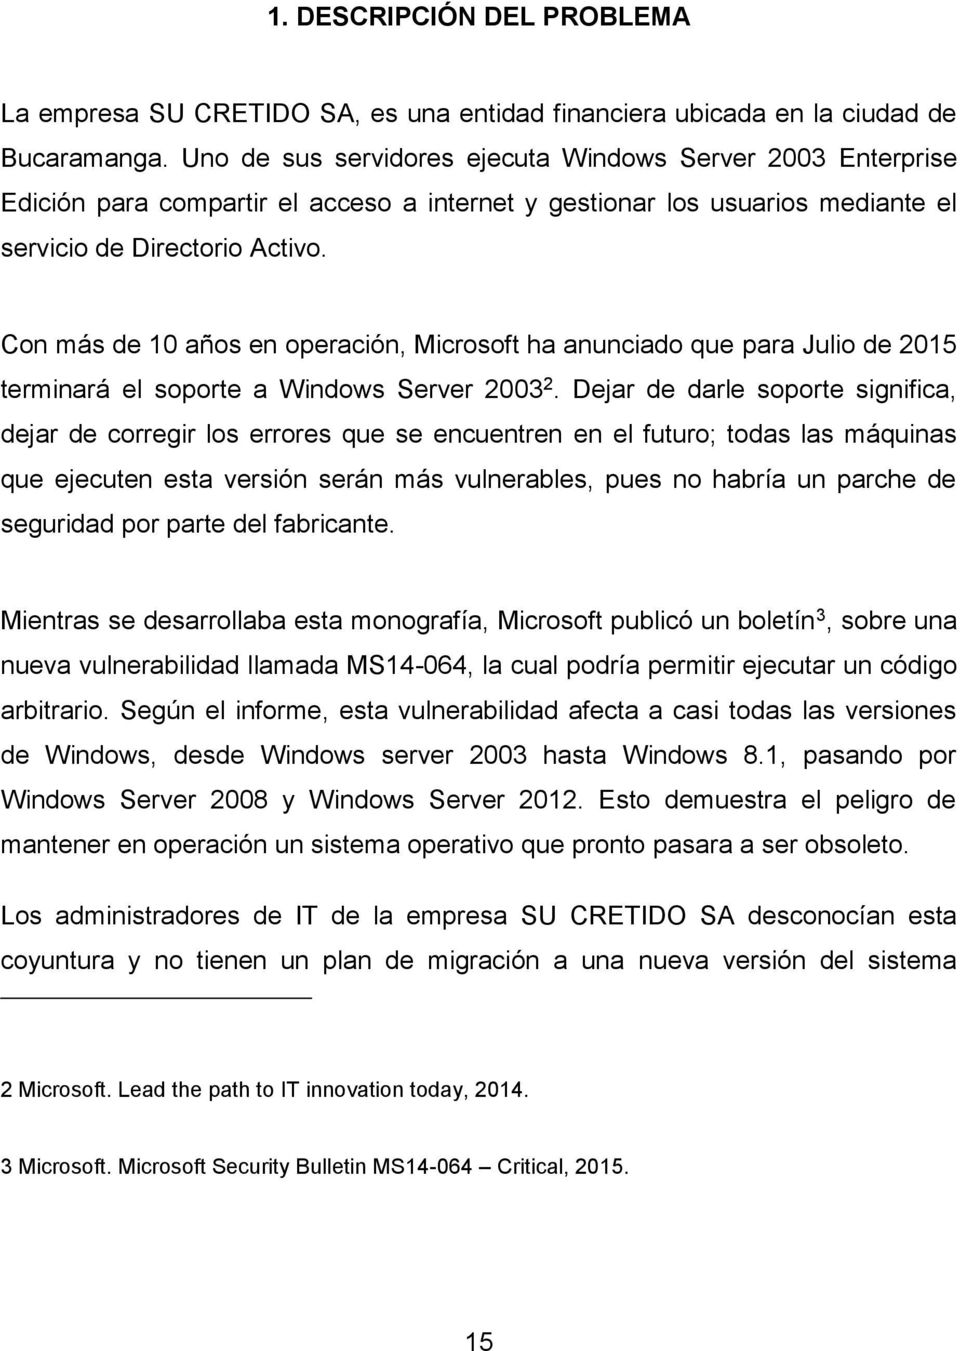 Con más de 10 años en operación, Microsoft ha anunciado que para Julio de 2015 terminará el soporte a Windows Server 2003 2.